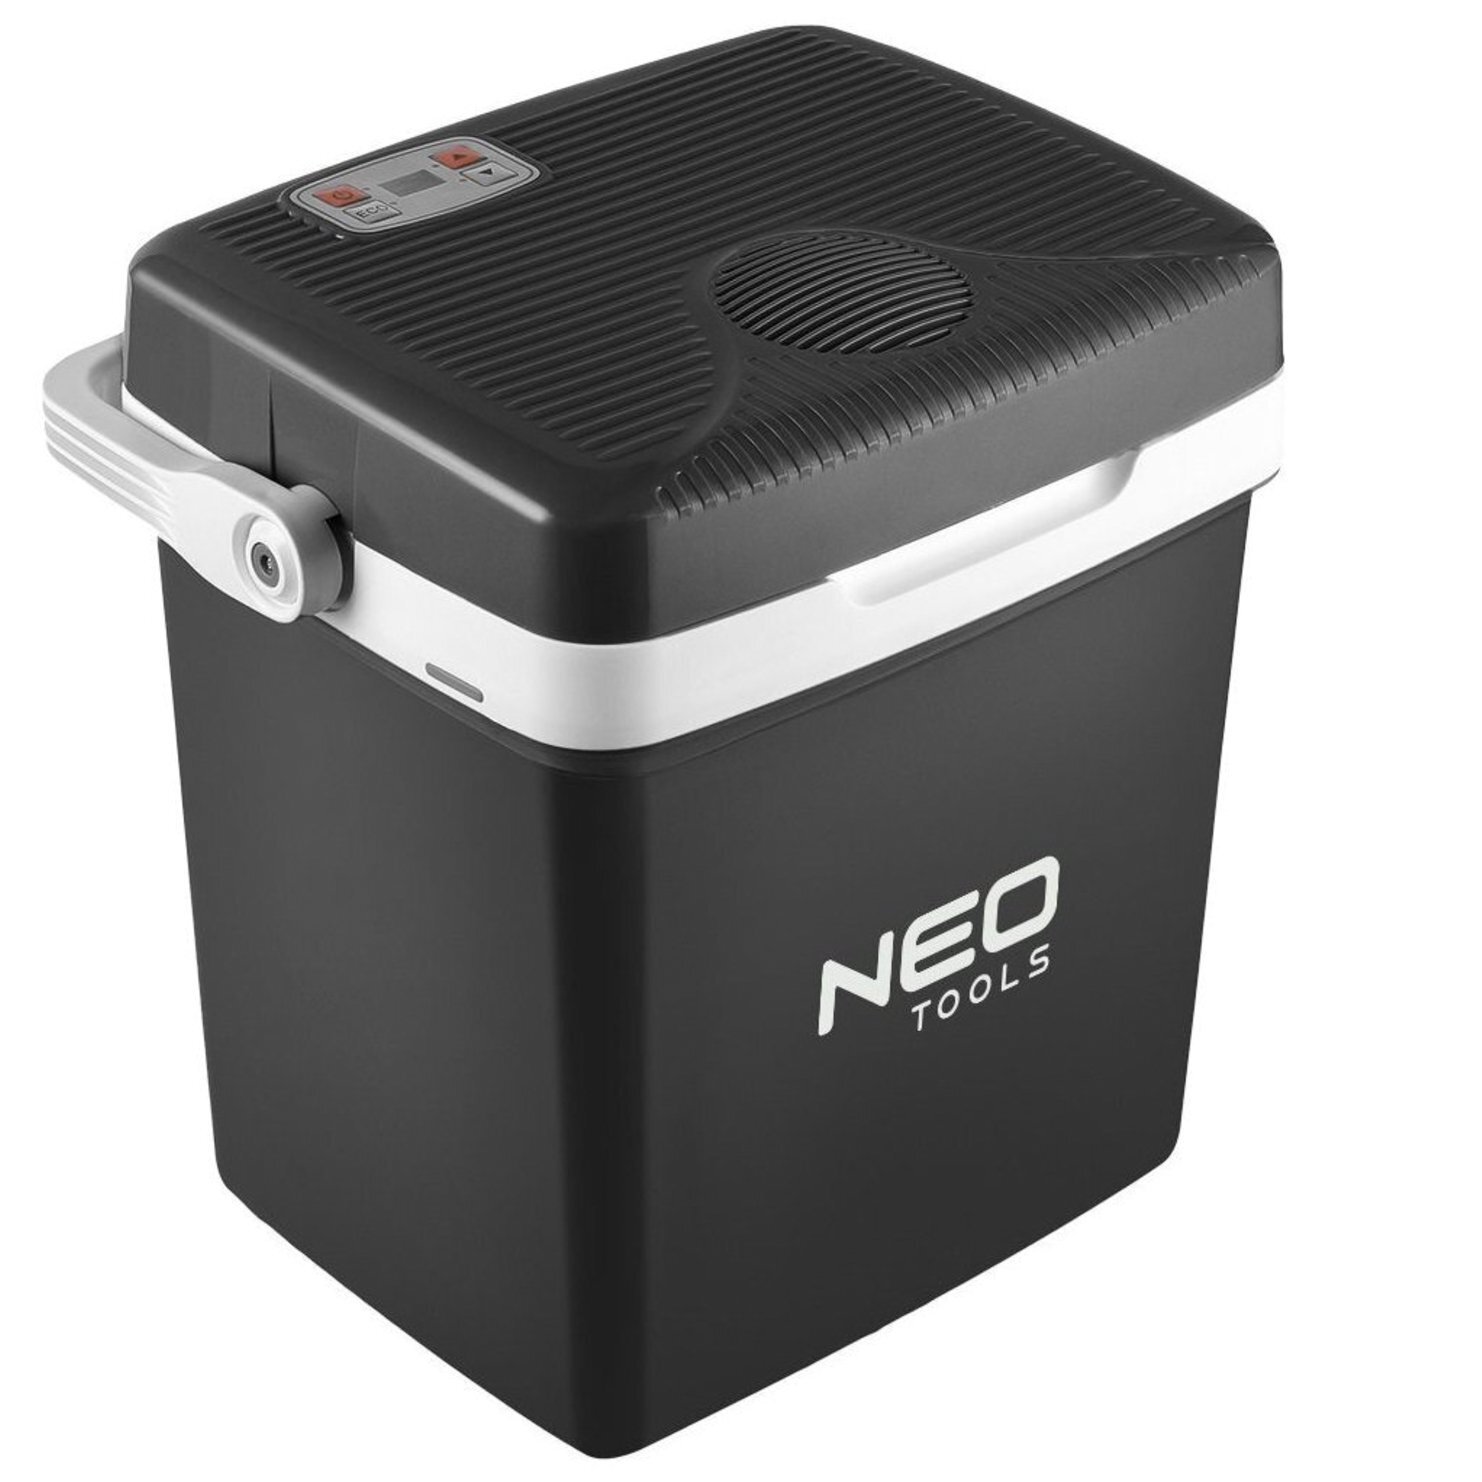 Холодильник мобильный Neo Tools 2в1 подогрев/охлаждение (63-152) фото 1